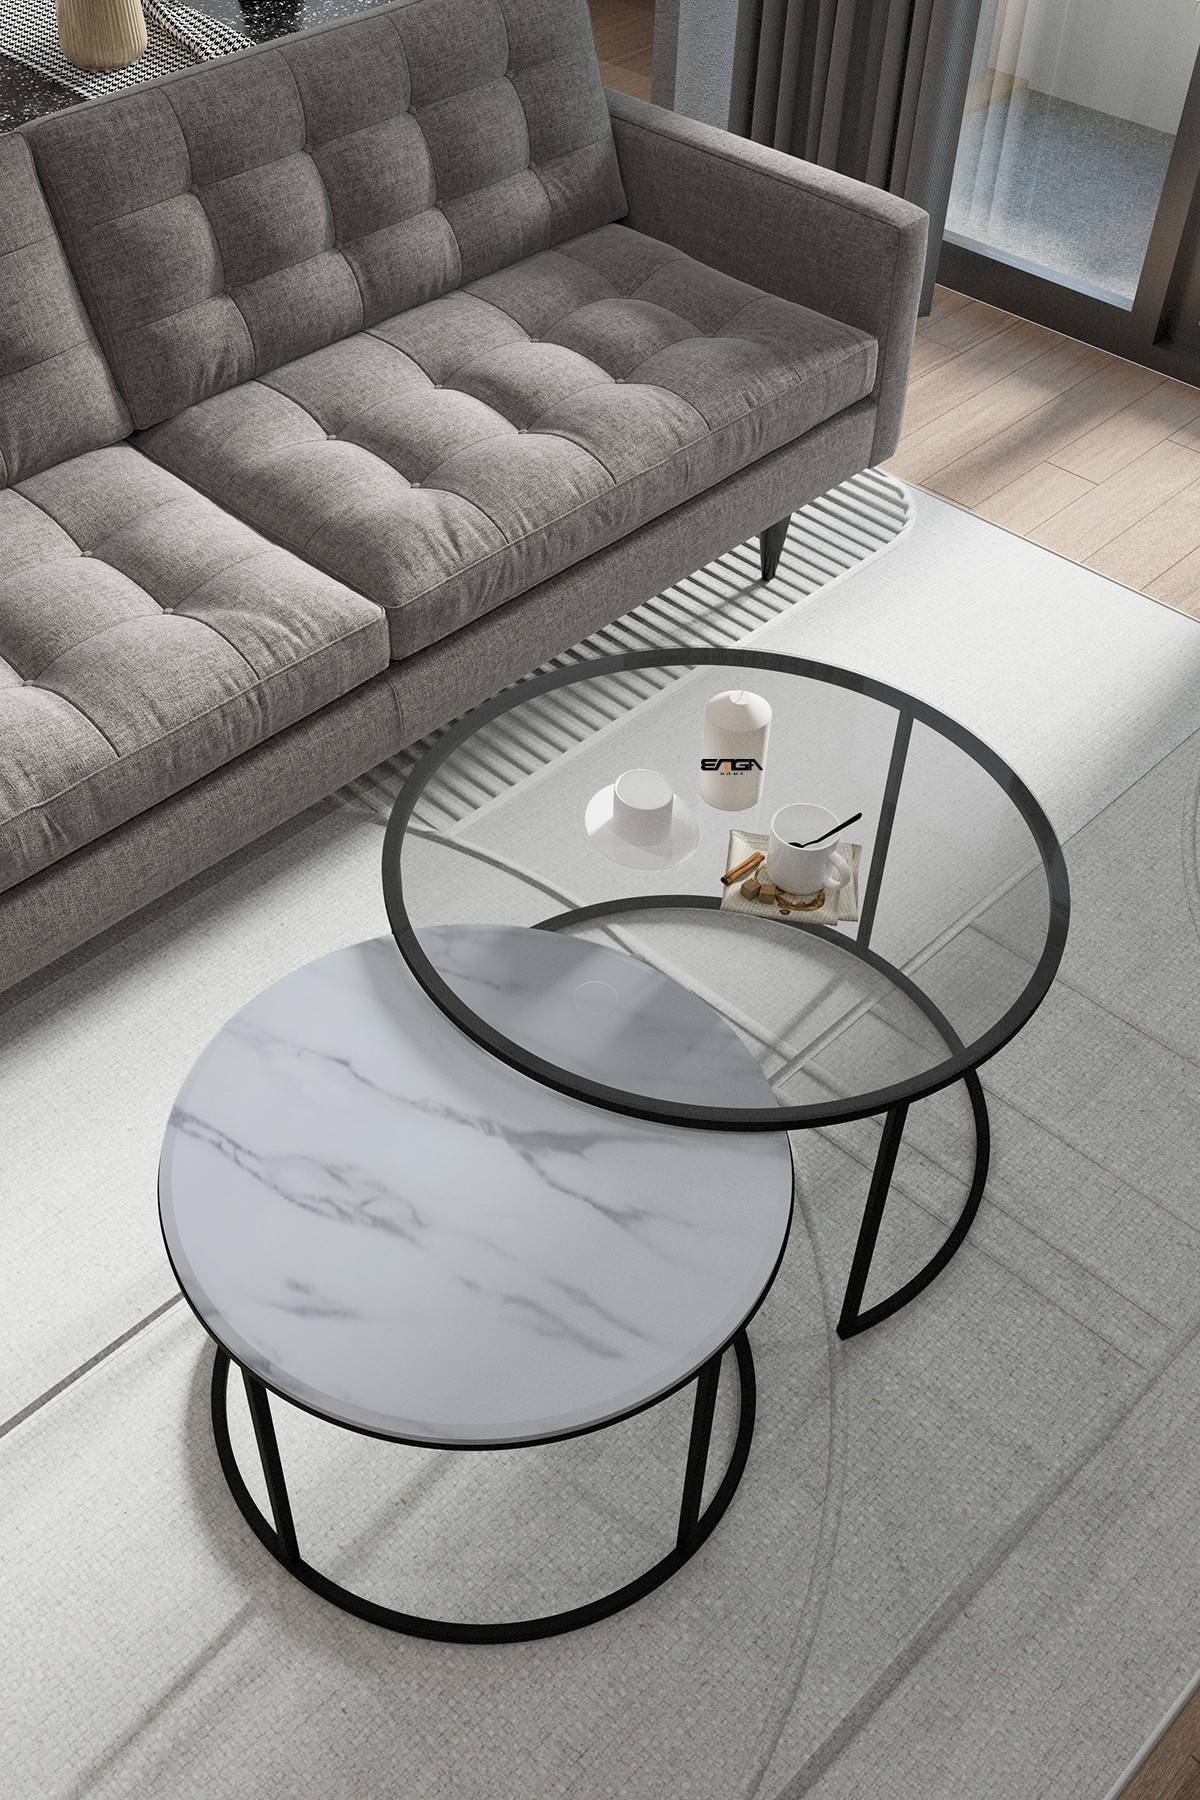 Lote de 2 mesas nido Houlia de cristal templado transparente, madera efecto mármol blanco y metal negro